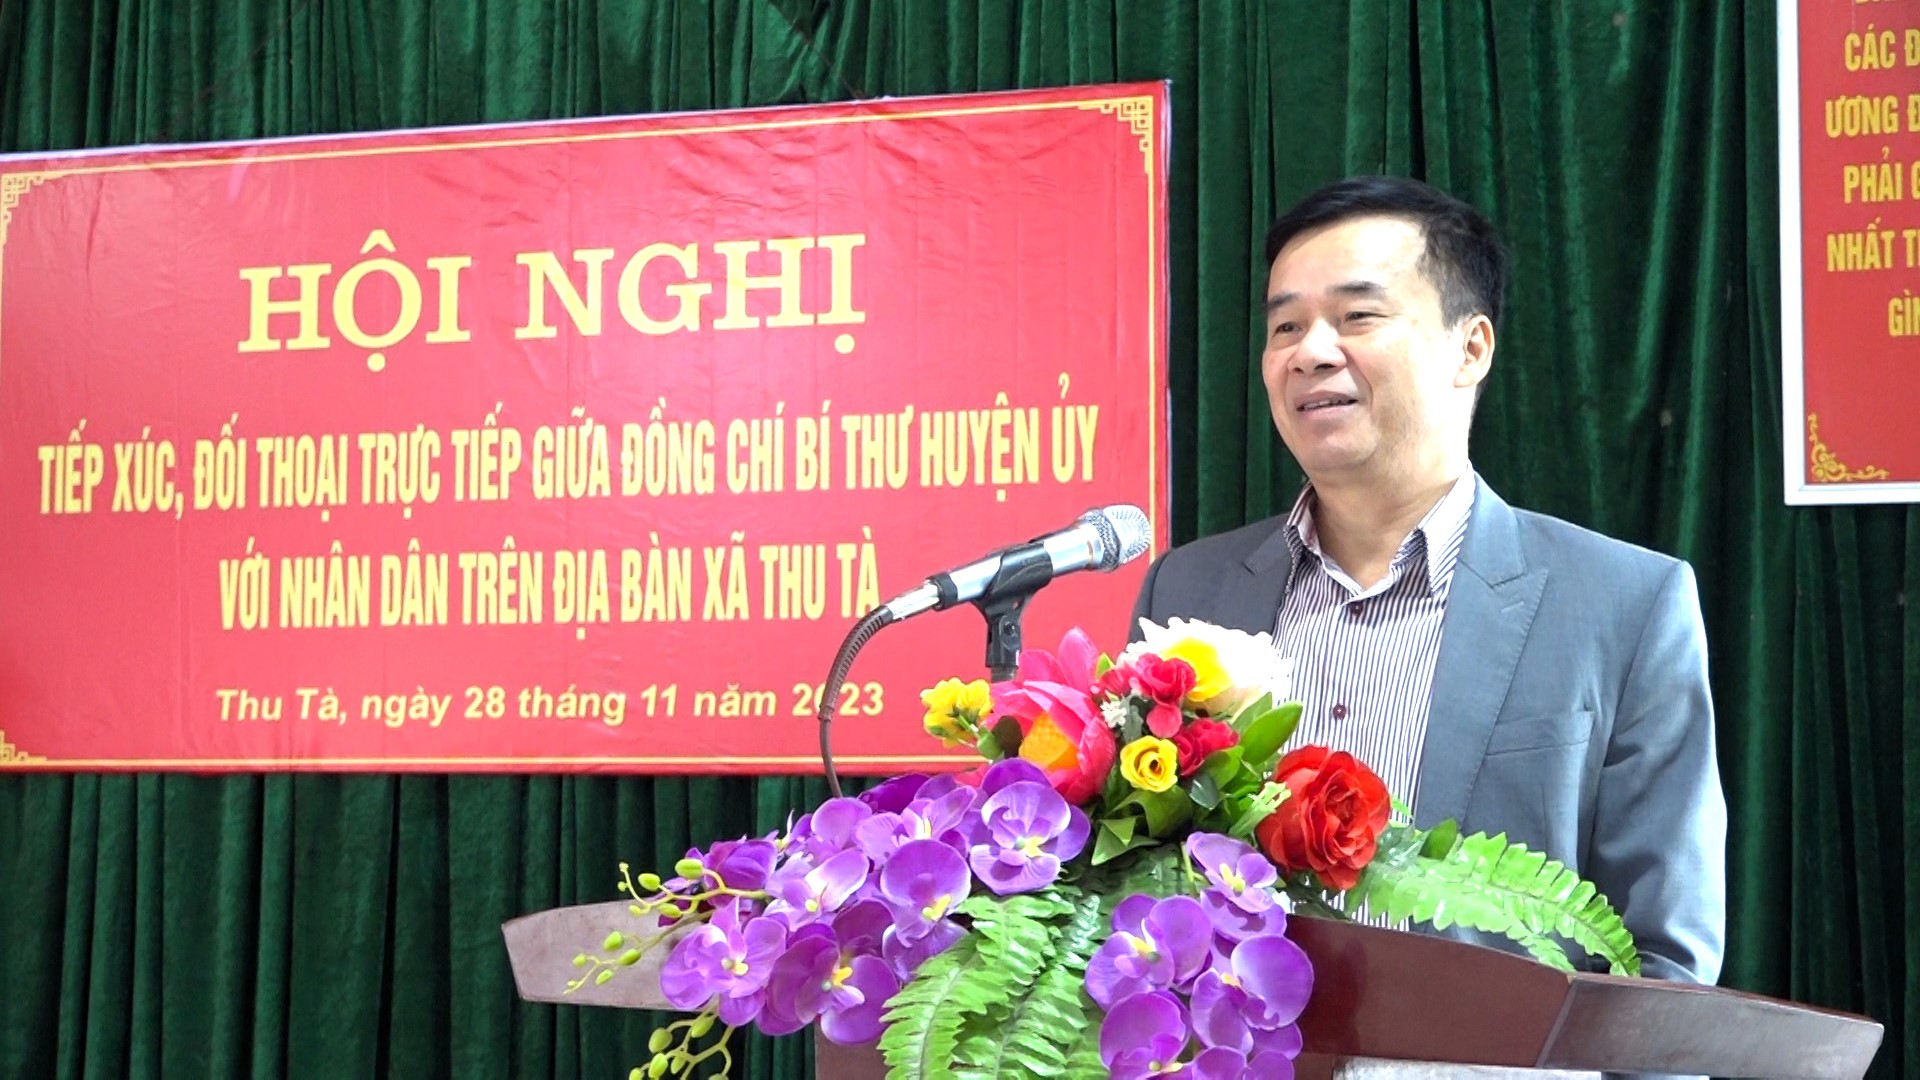 Đồng chí Bí thư Huyện ủy Hoàng Nhị Sơn tiếp xúc đối thoại trực tiếp với cán bộ, nhân dân xã Thu Tà